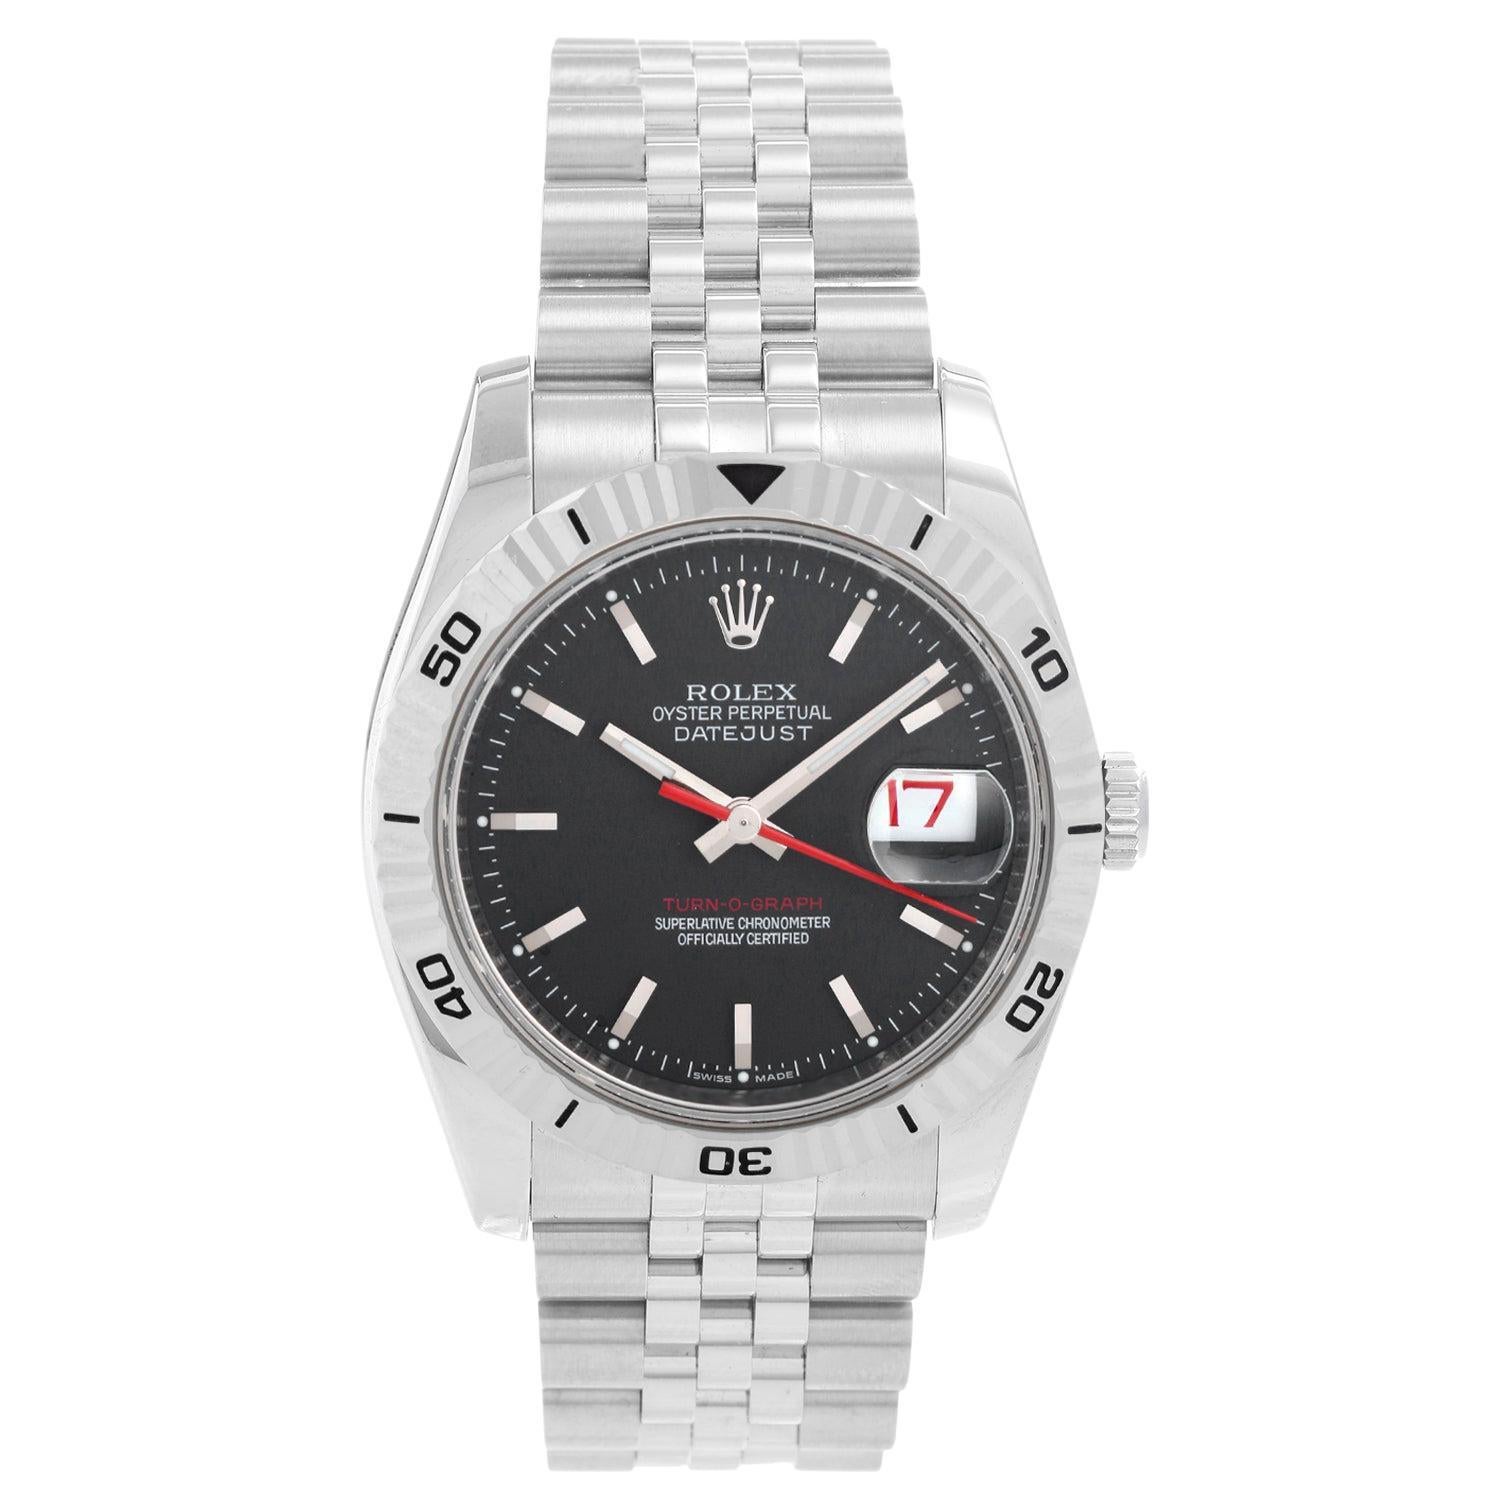 Men's Rolex Turnograph Datejust Stainless Steel Watch 116264